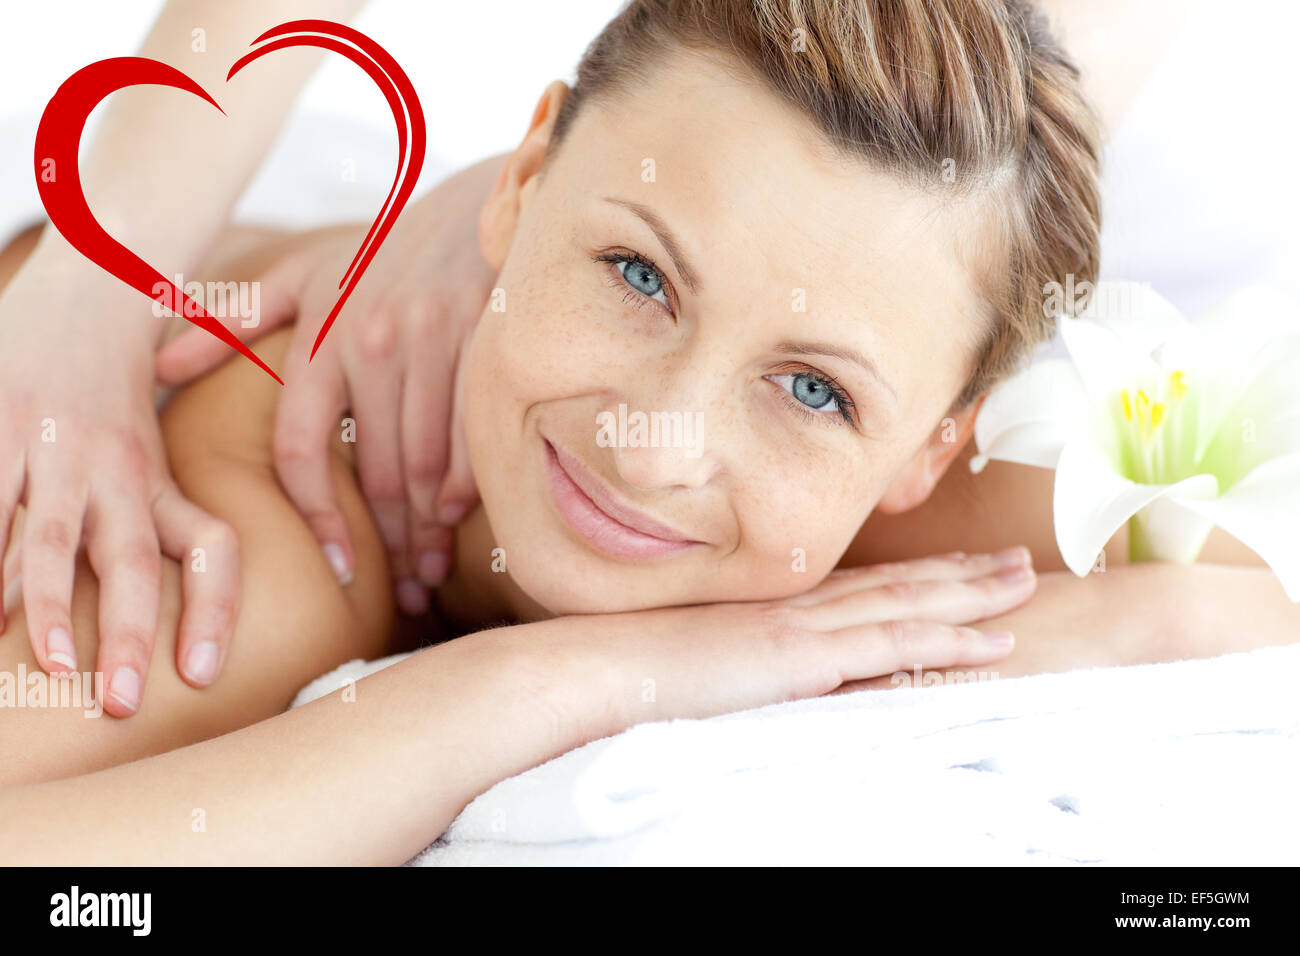 Imagen compuesta de encantado mujer disfrutando de un masaje en la espalda Foto de stock